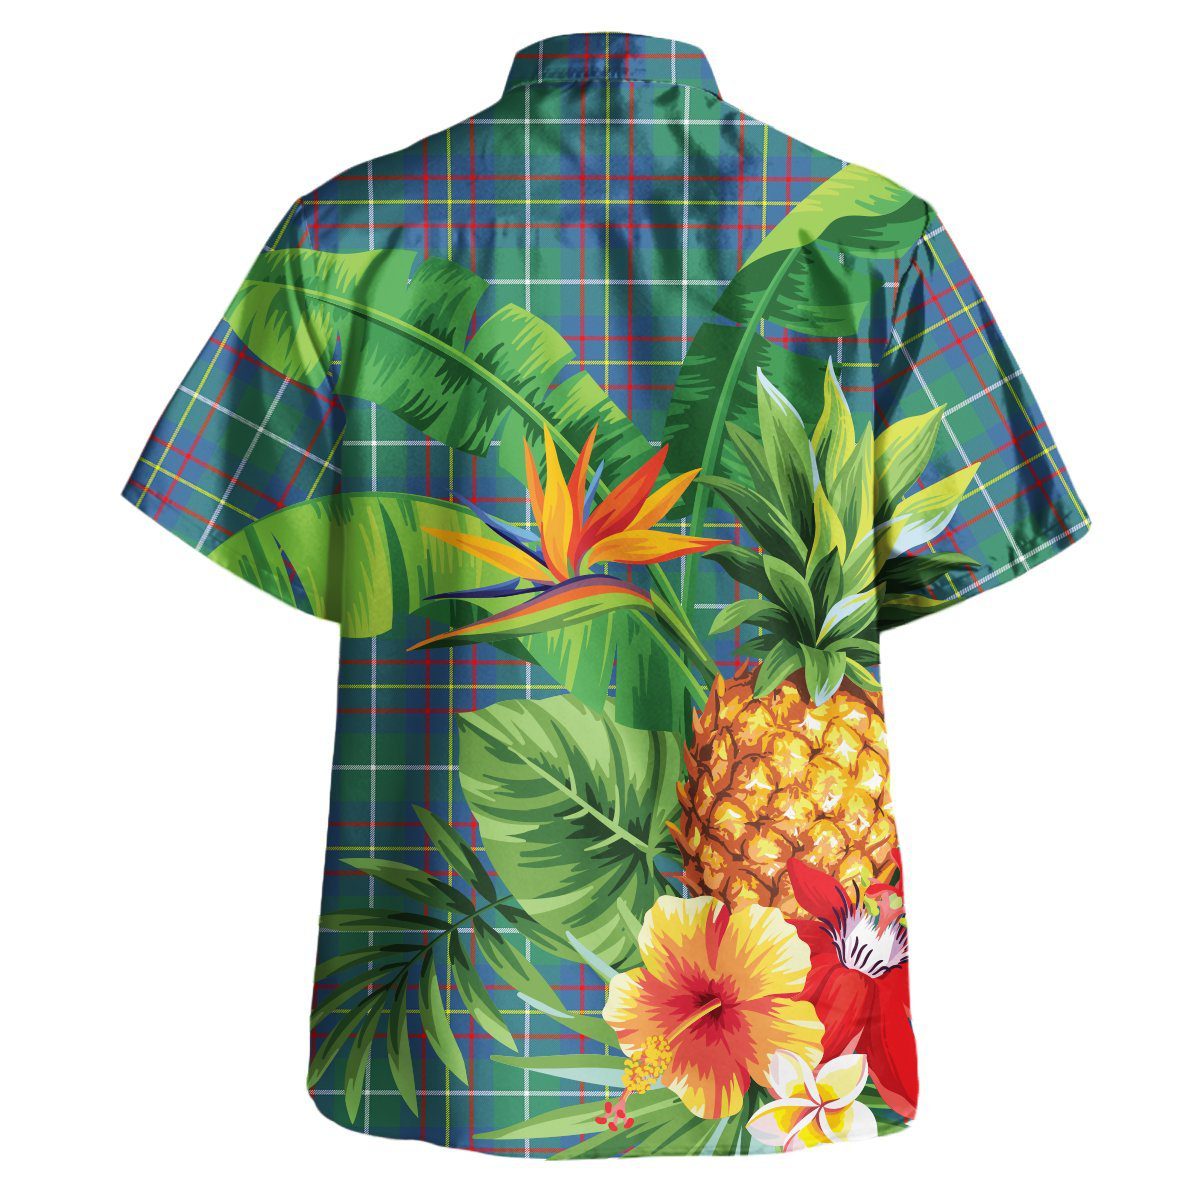 Inglis Ancient Tartan Aloha Shirt version 2